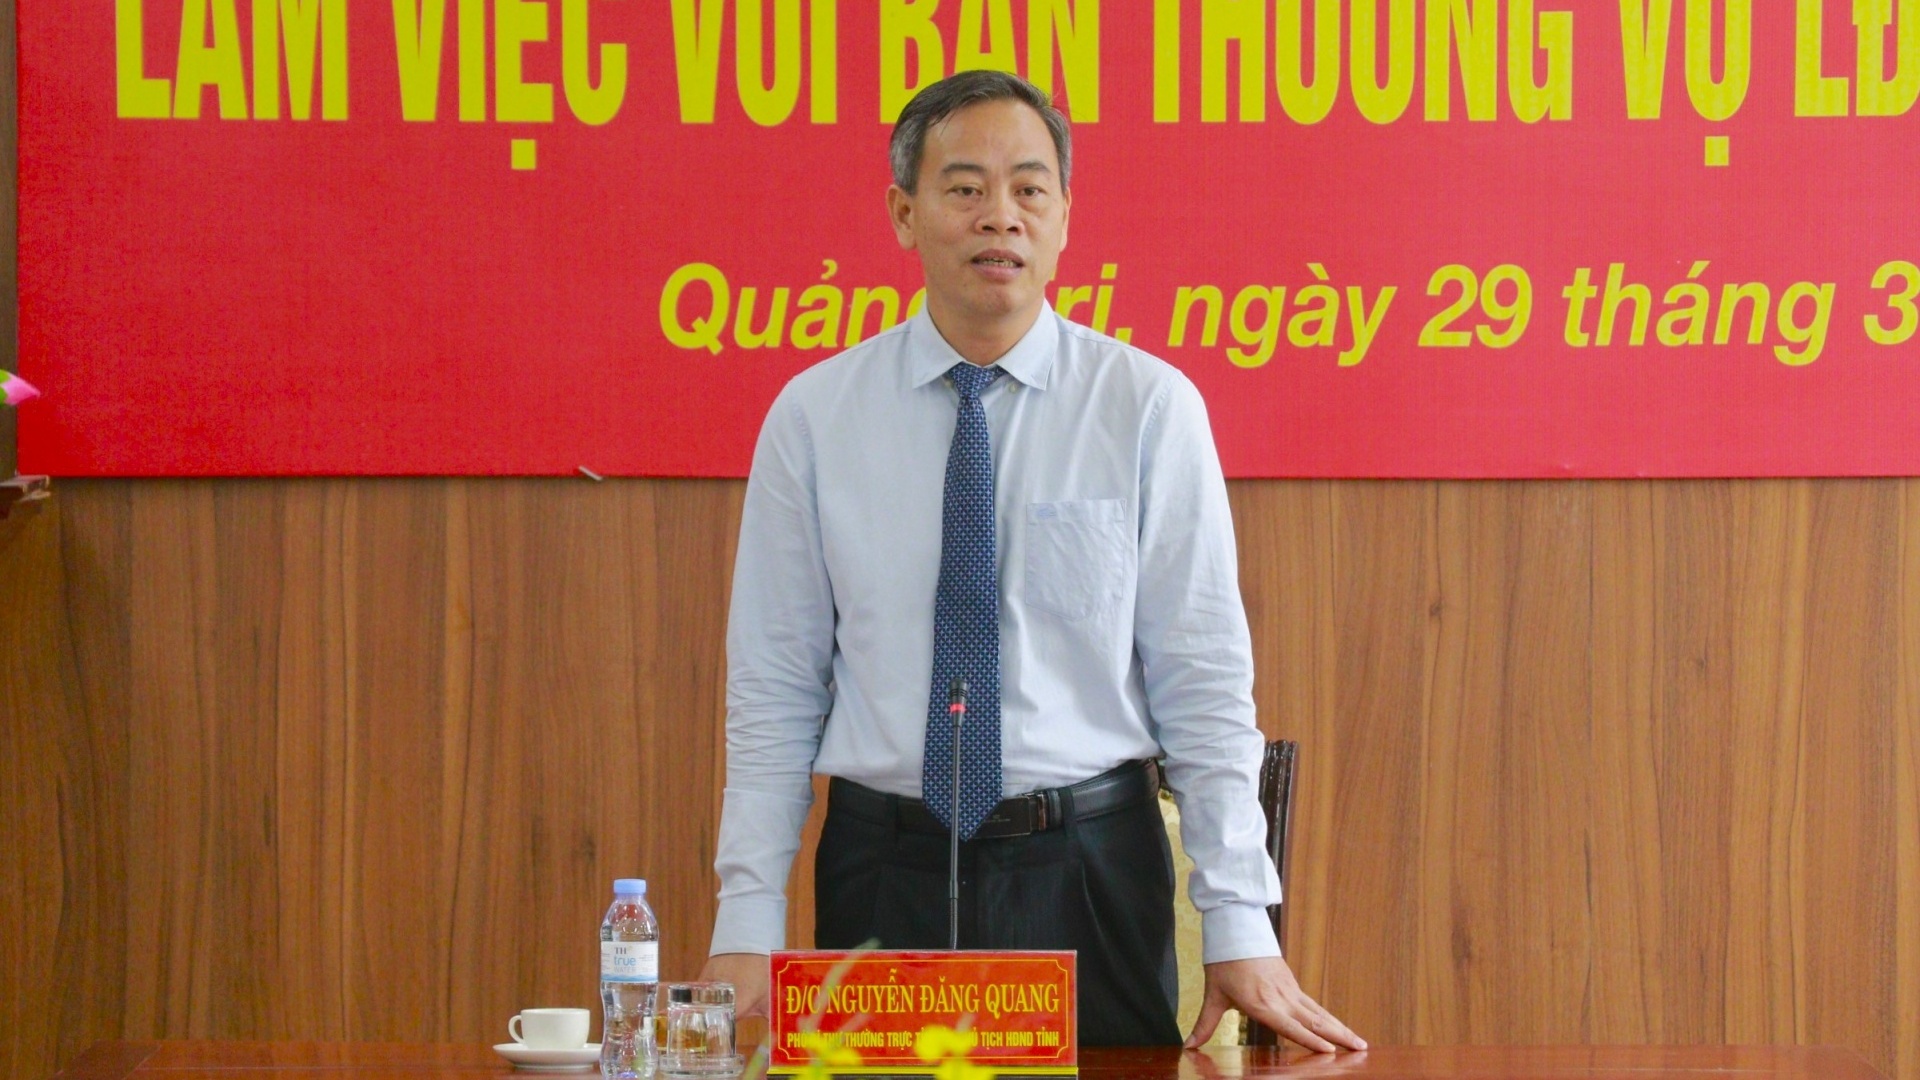 LĐLĐ tỉnh Quảng Trị tiên phong xây nhà công vụ cho giáo viên vùng khó